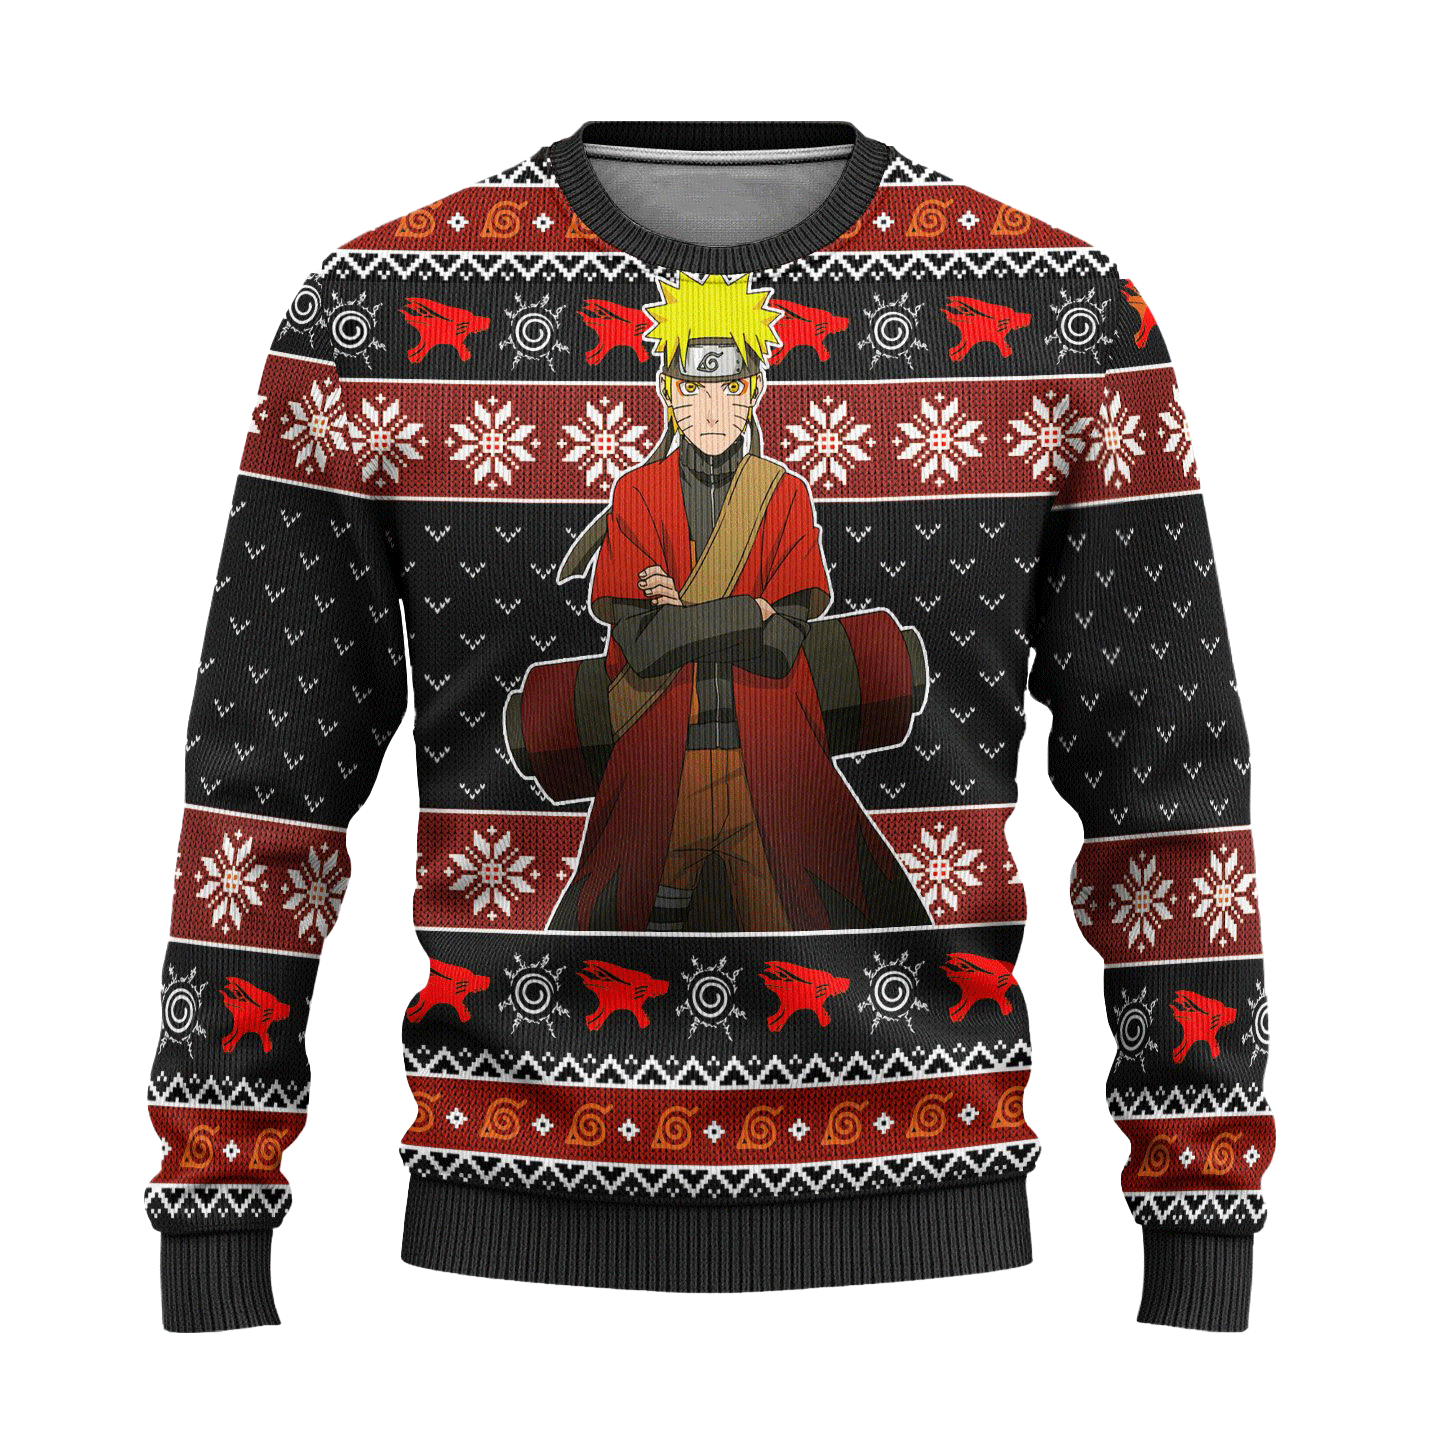 Naruto Sage Mode Anime Ugly Christmas Sweater Xmas Gift